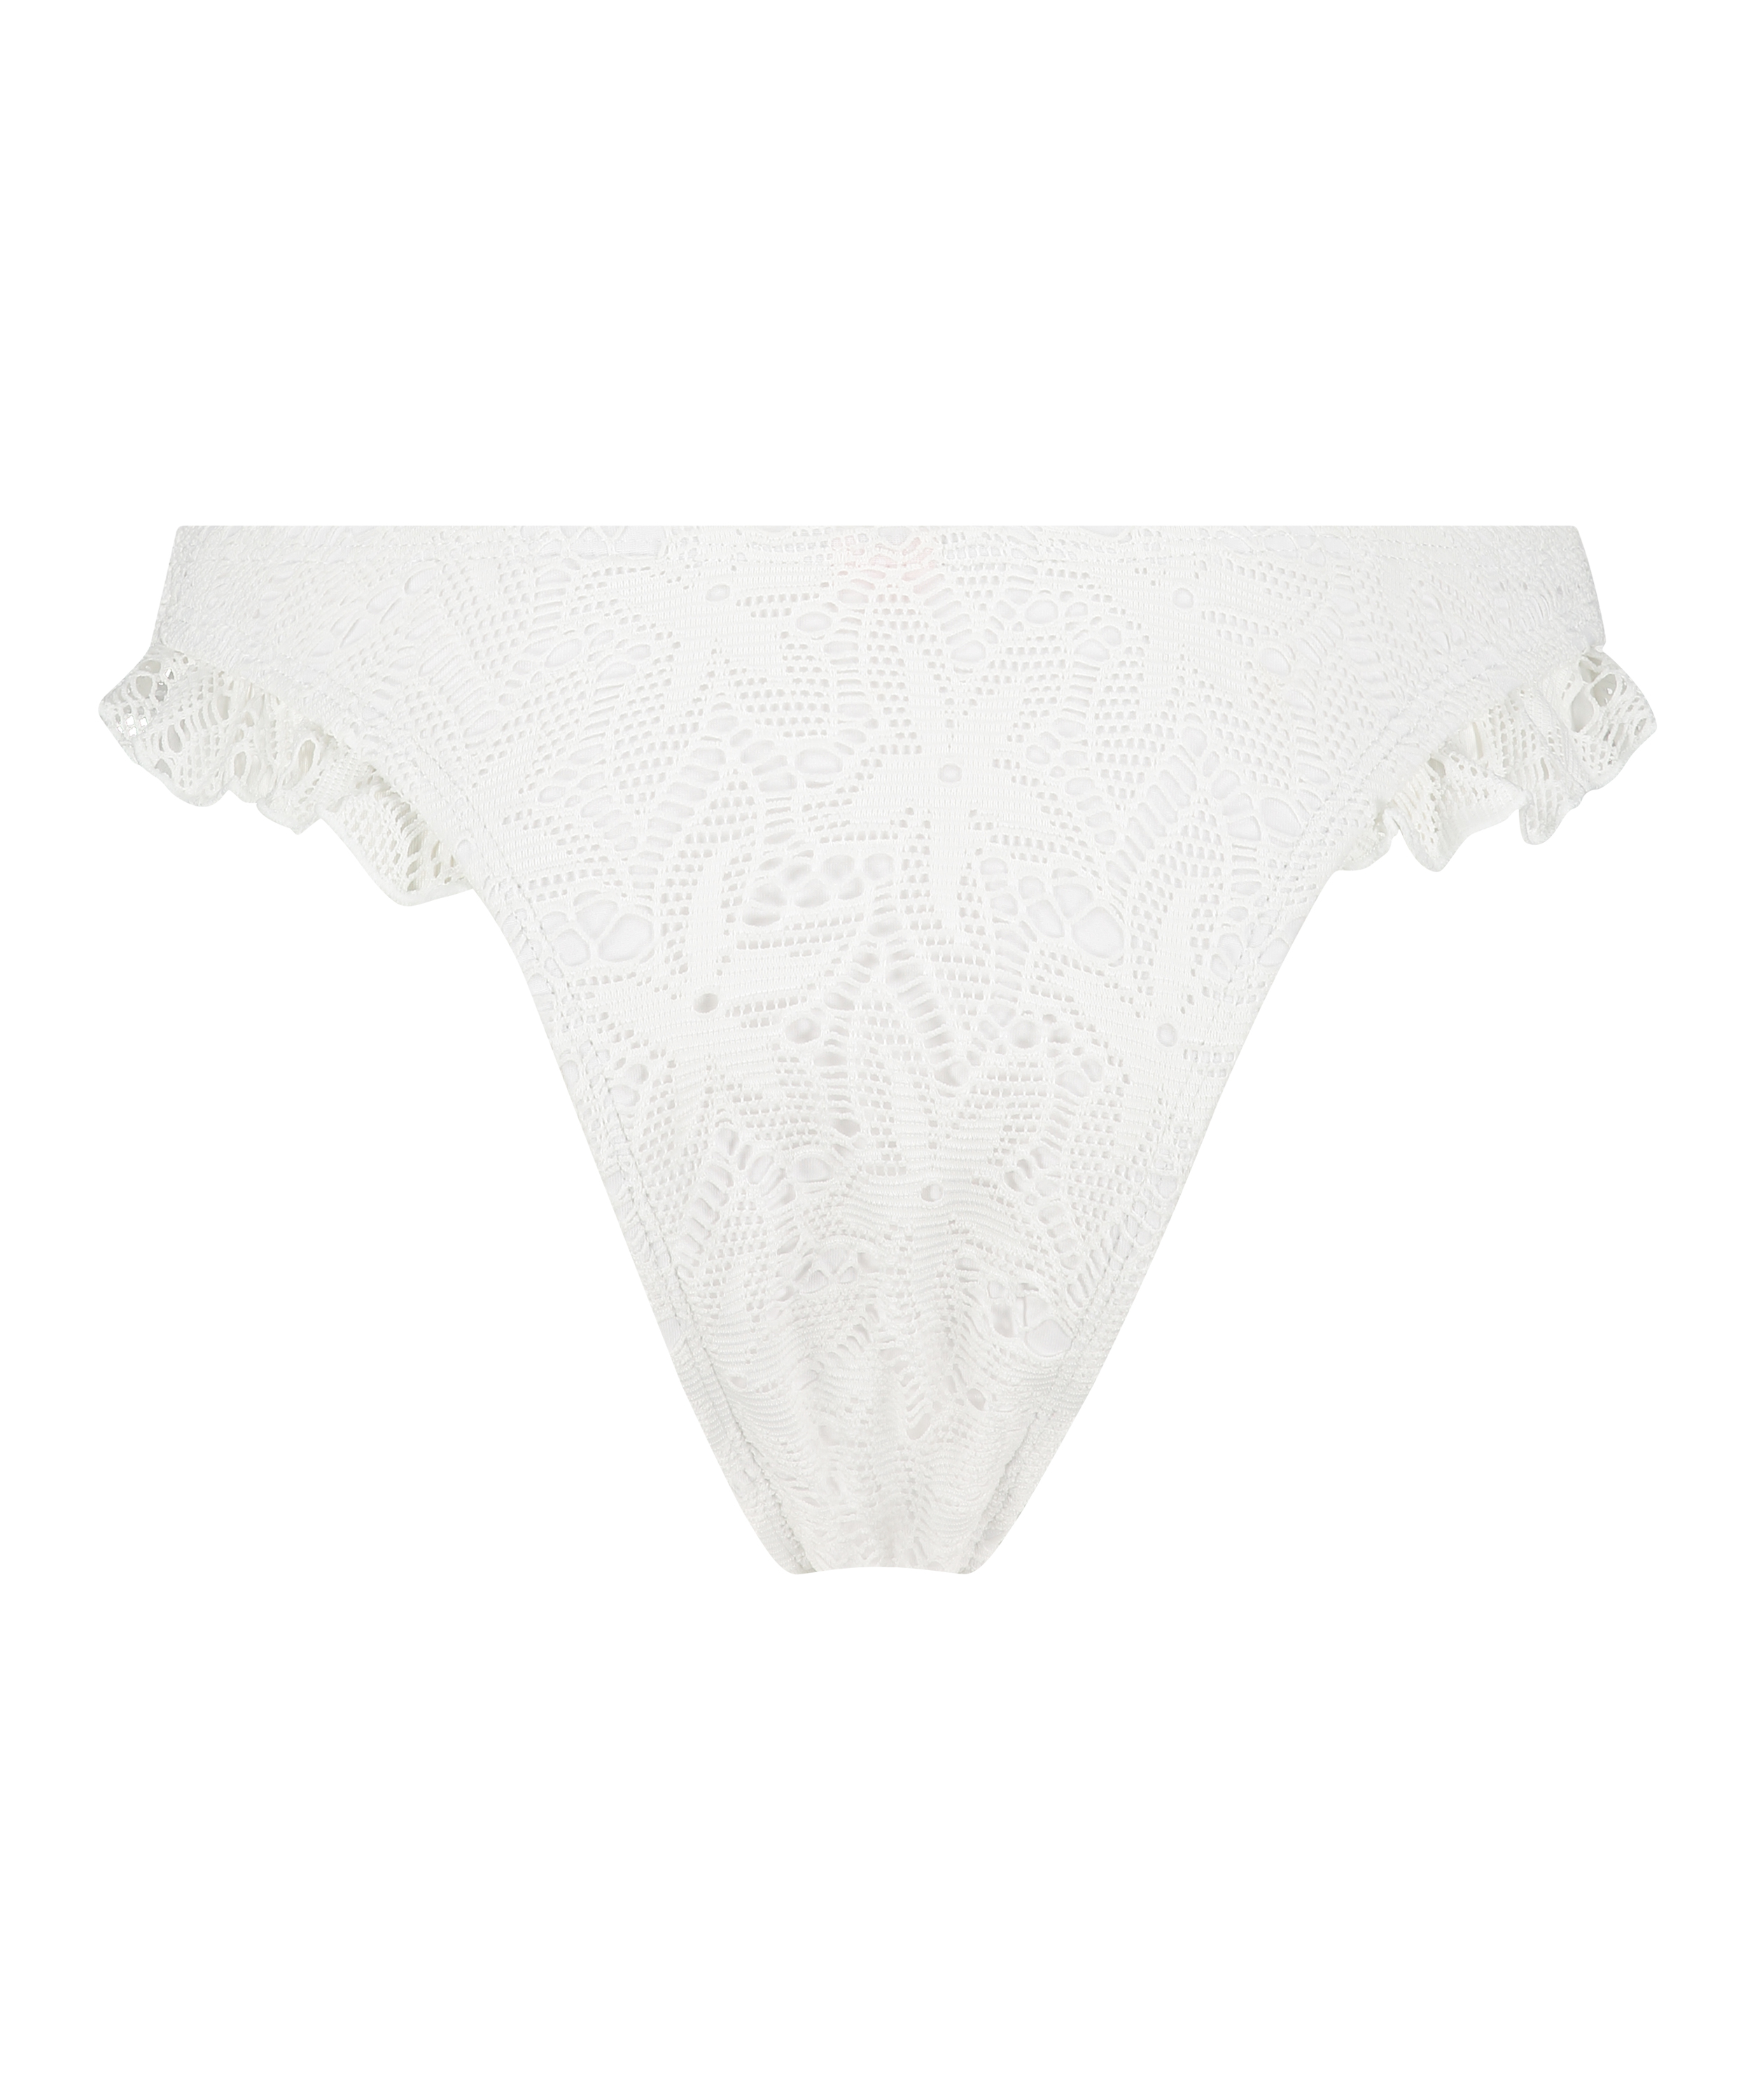 Etta Crochet high leg bikini bottom, White, main